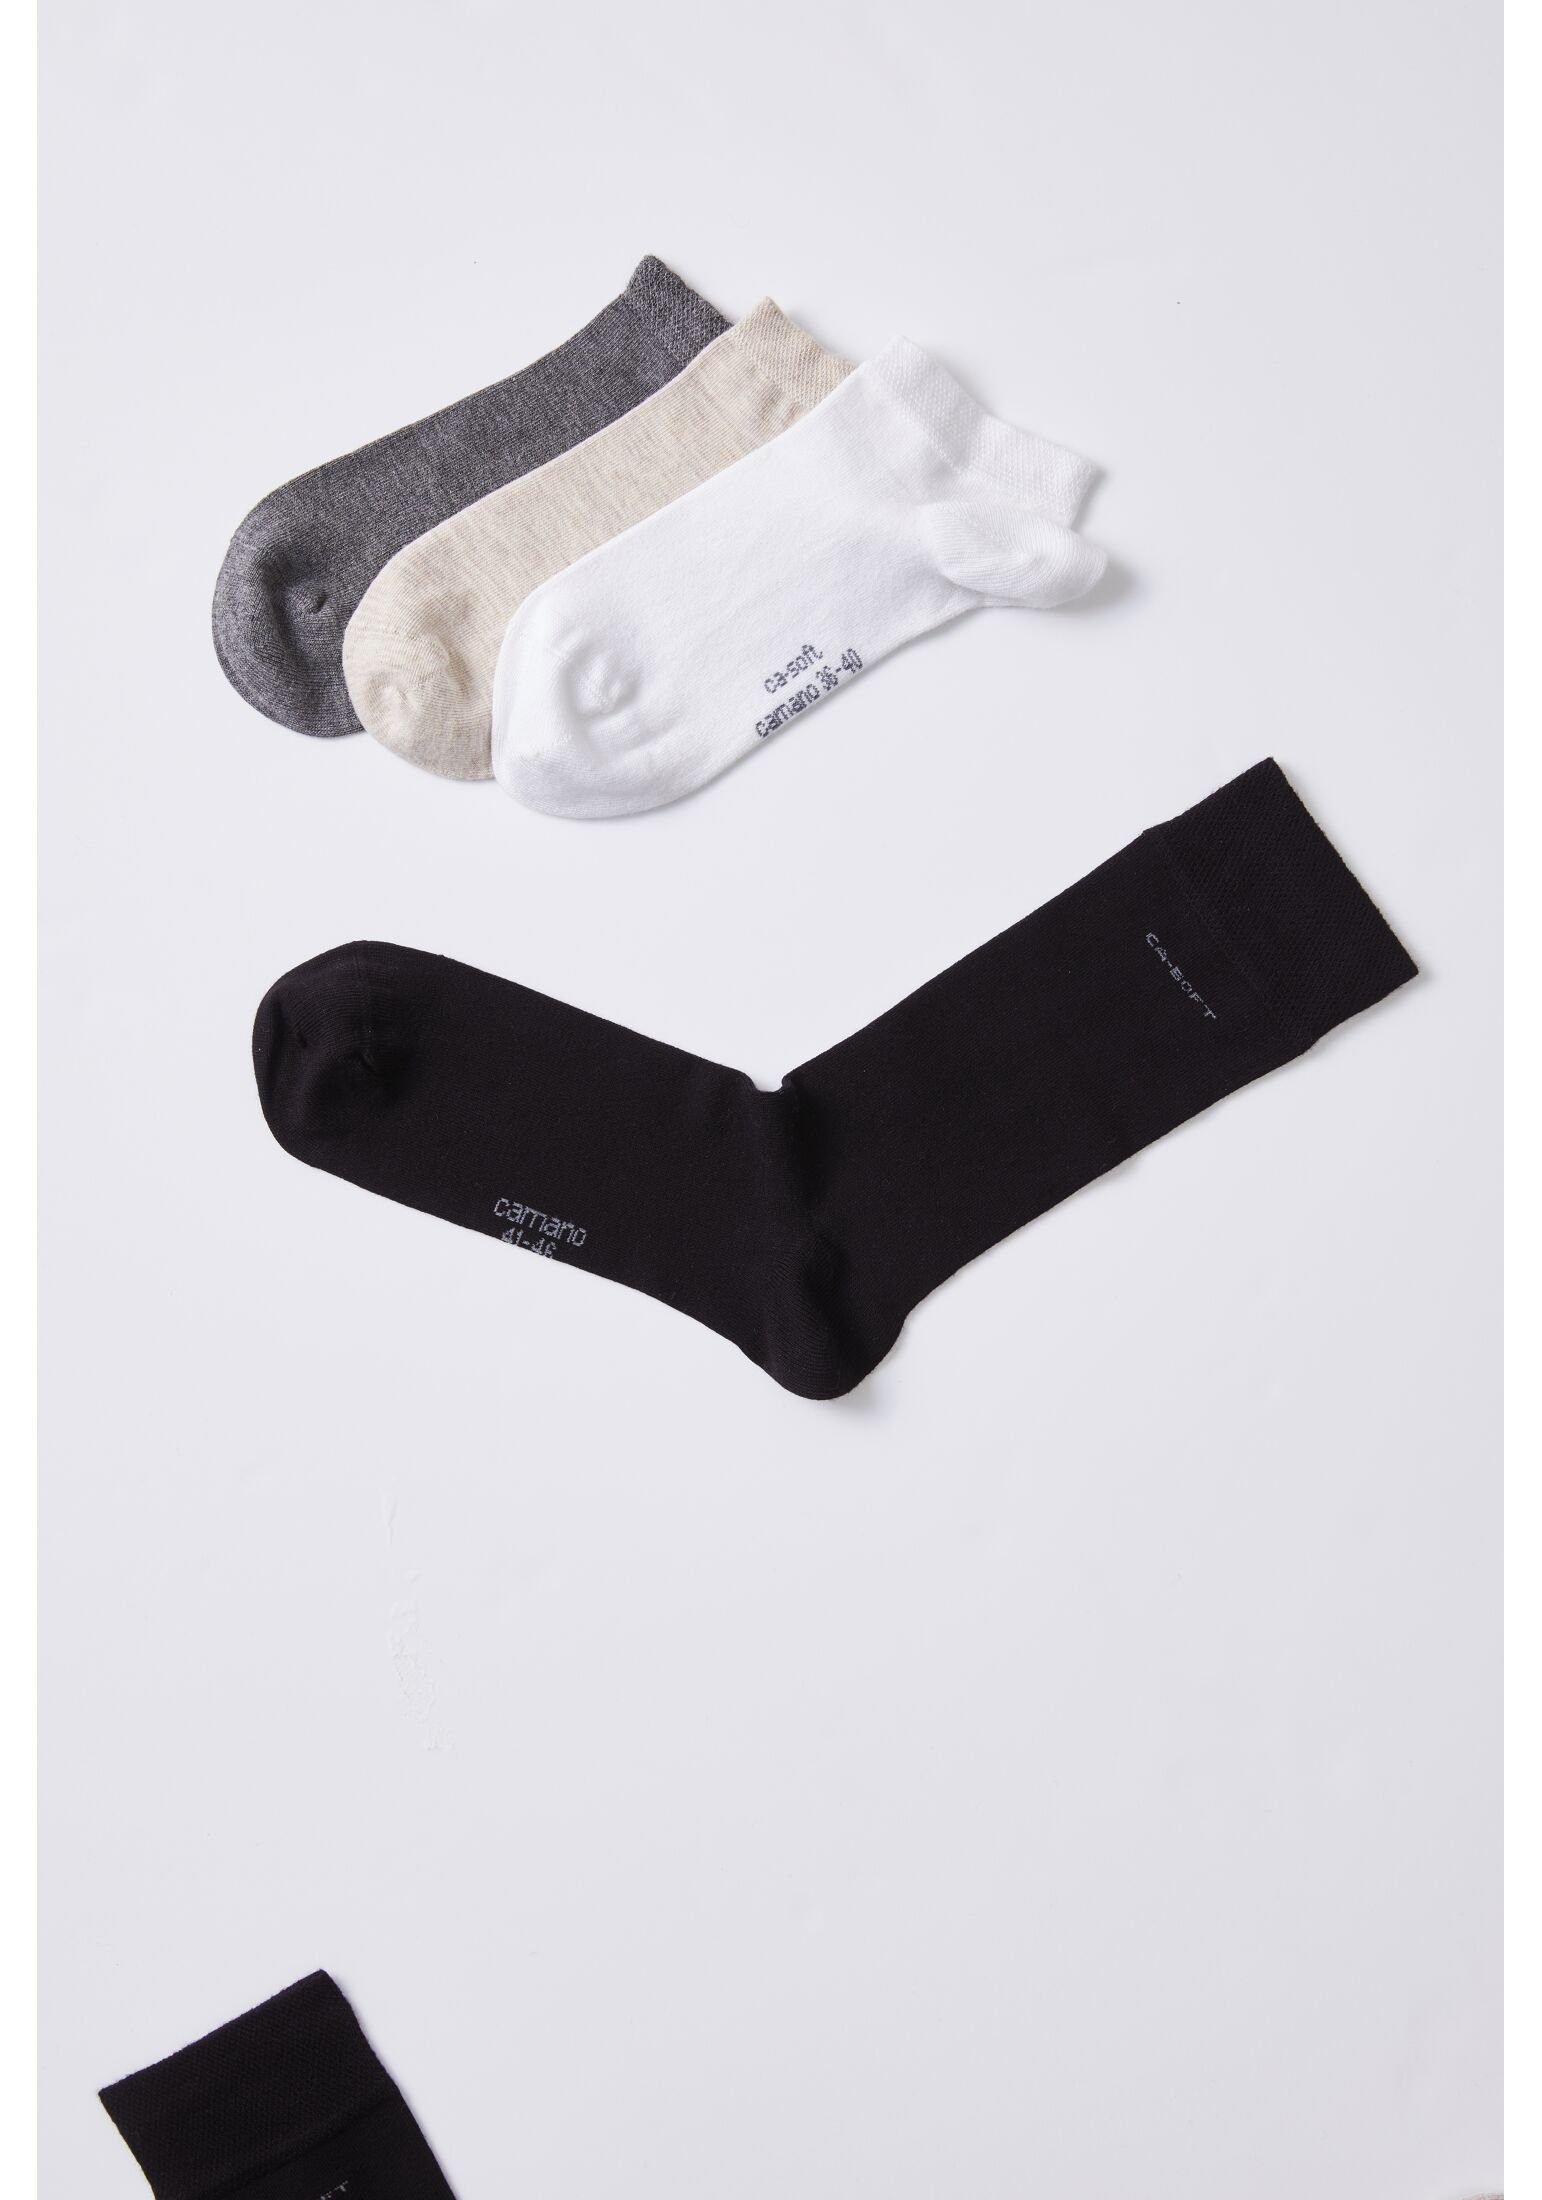 4er Pack Camano black Socken Socken